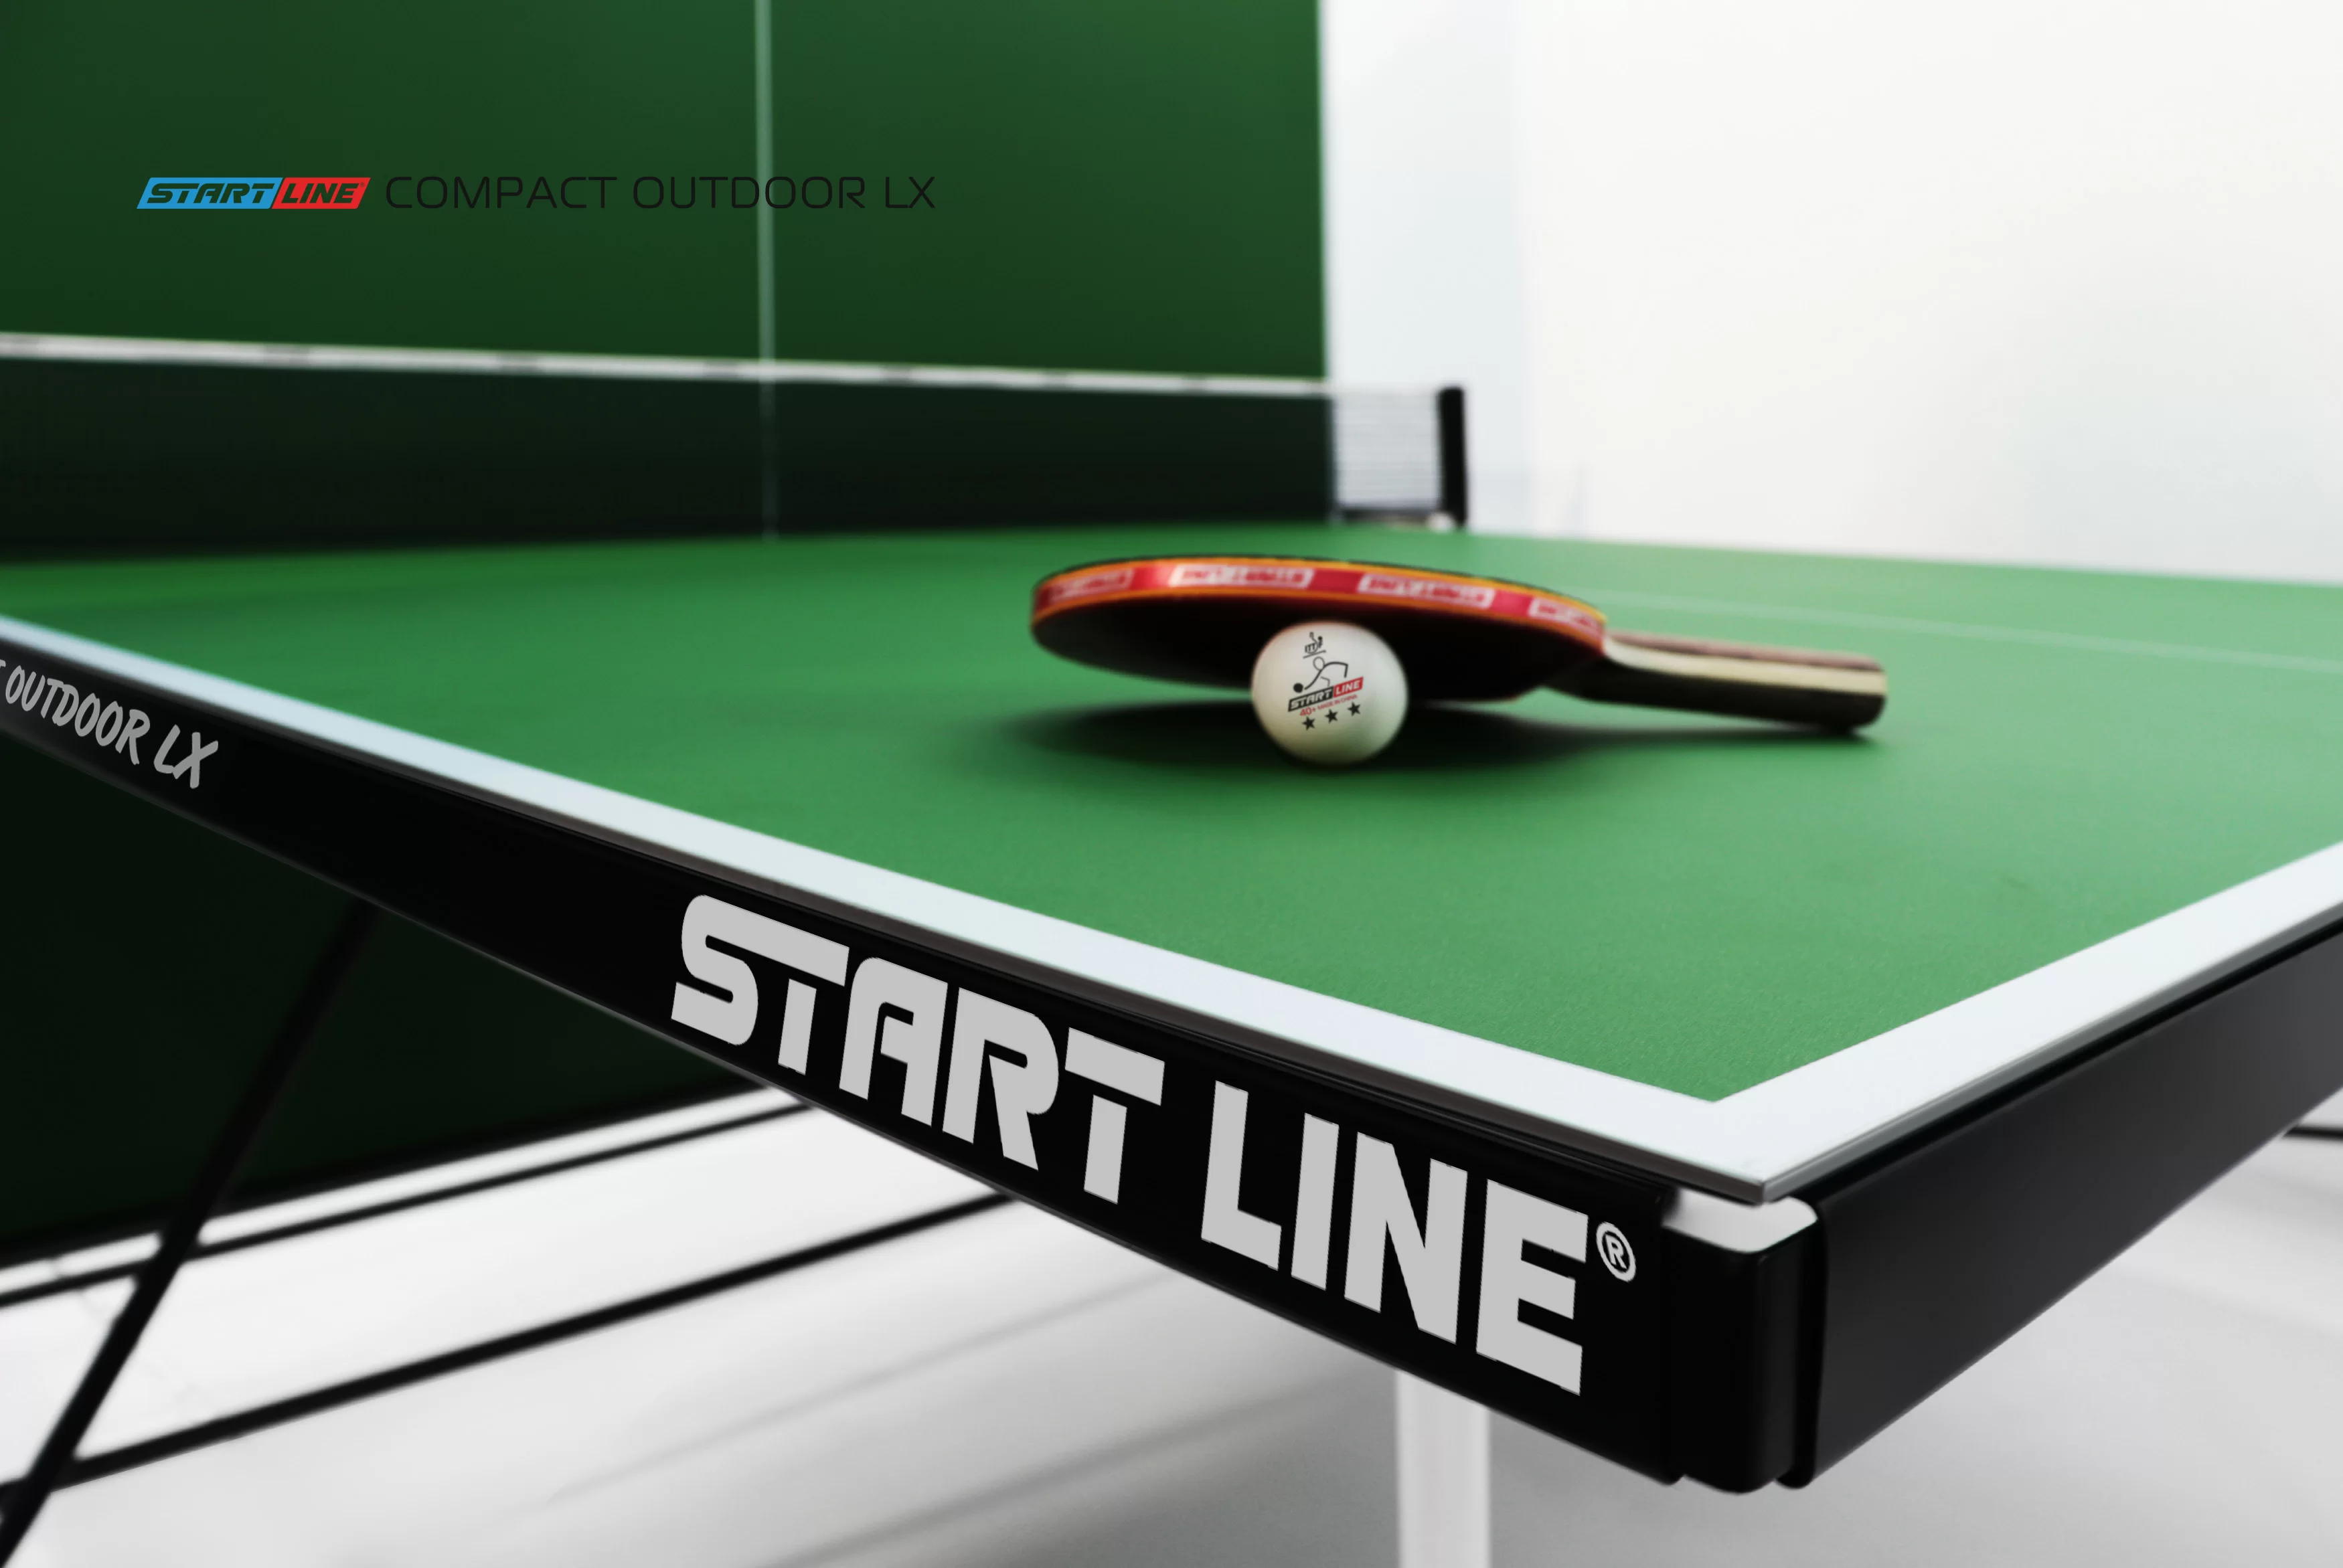 Реальное фото Теннисный стол Start Line Compact Outdoor LX green от магазина СпортЕВ